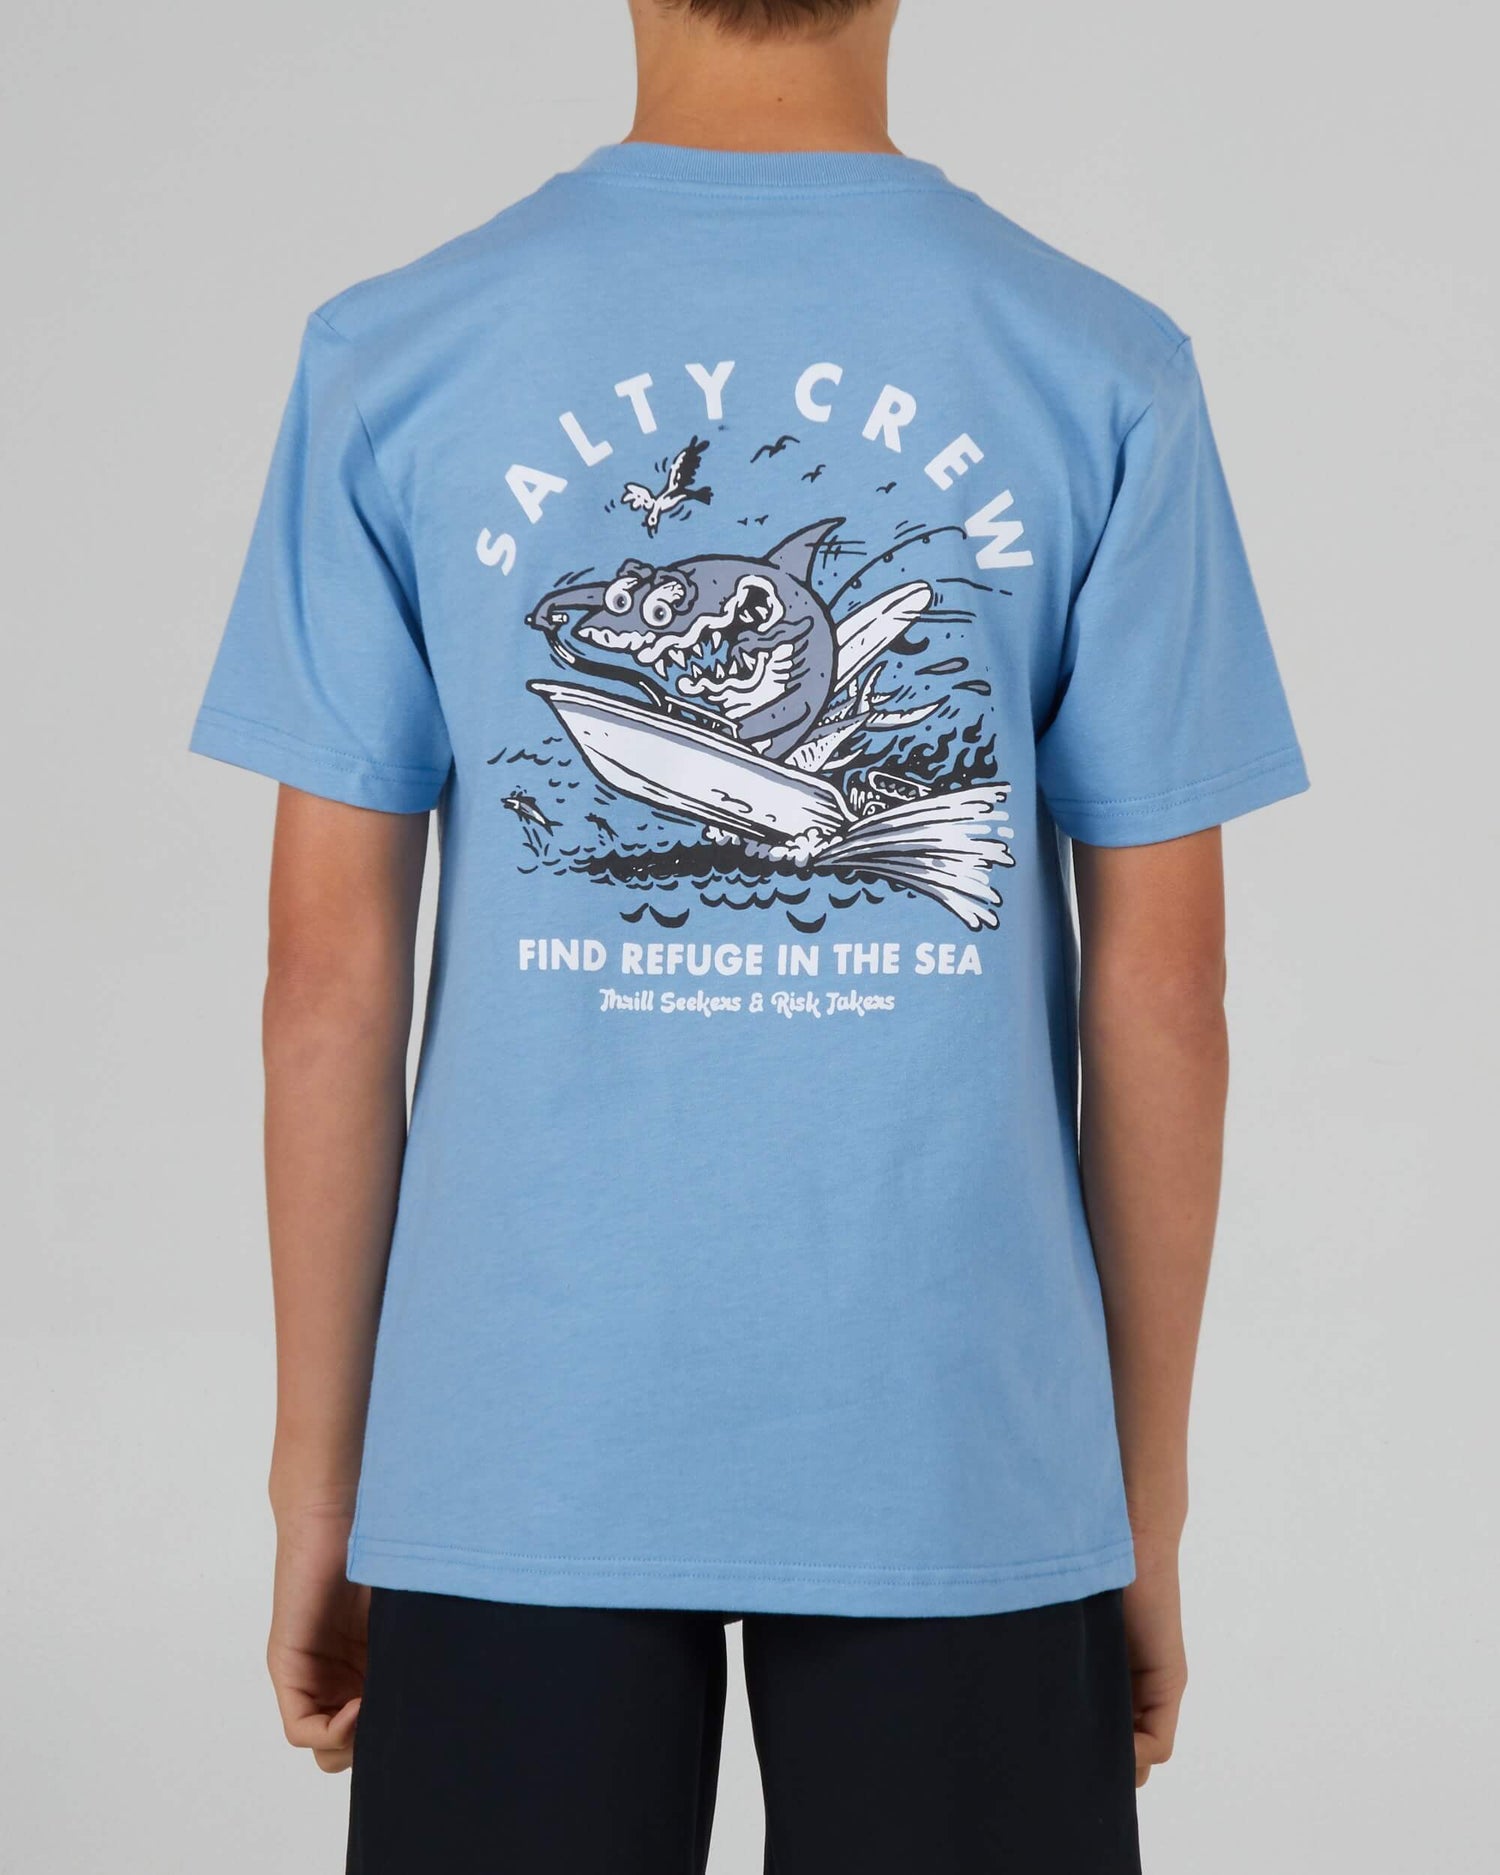 Salty Crew Boys - Hot Rod Shark Boys S/S Tee - Marine Blue